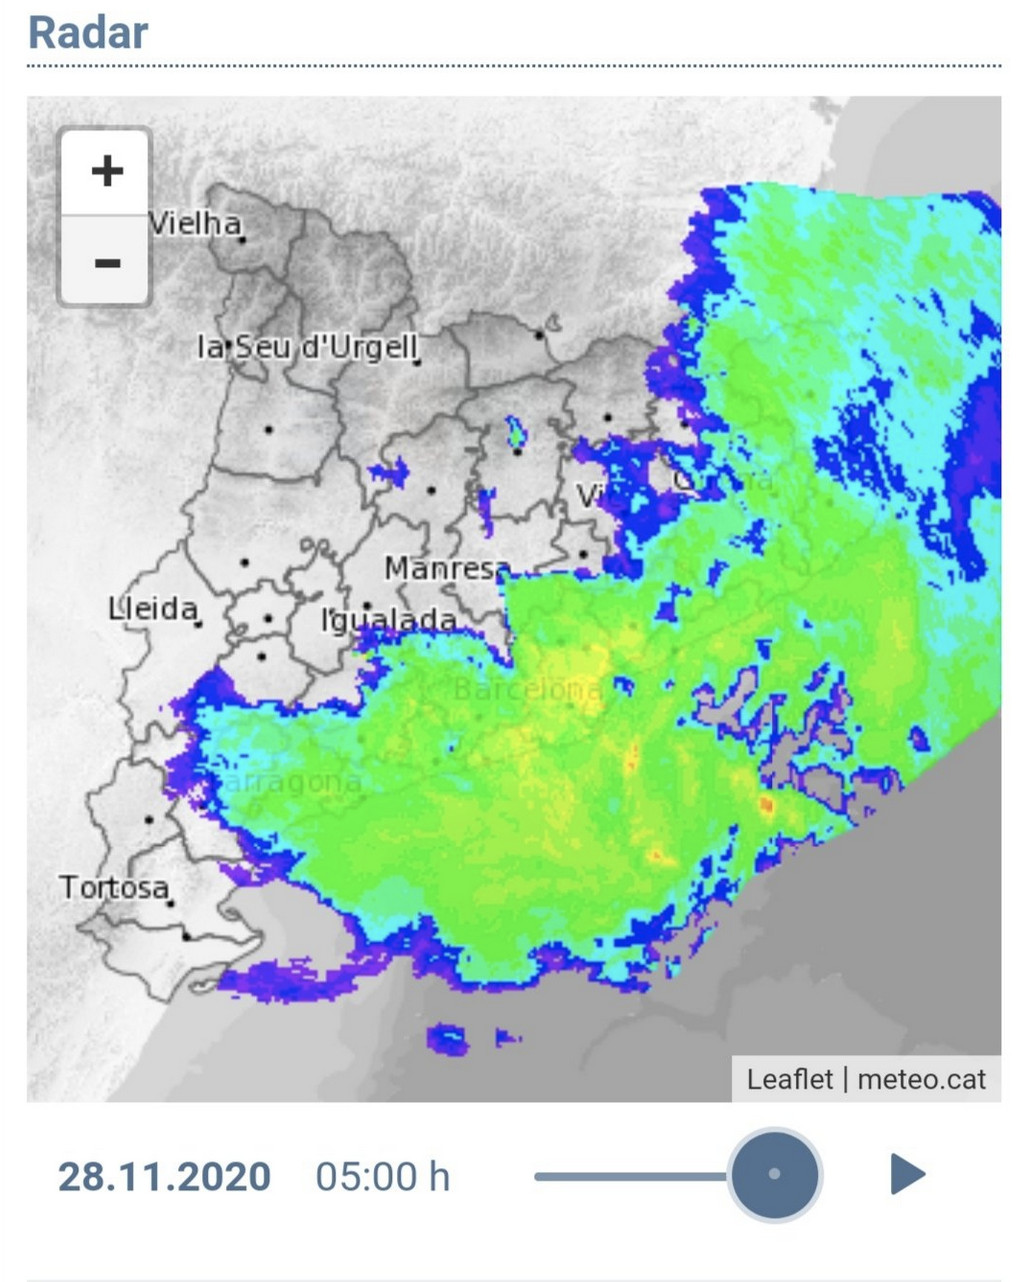 Meteorología en Cataluña durante el fin de semana / METEOCAT